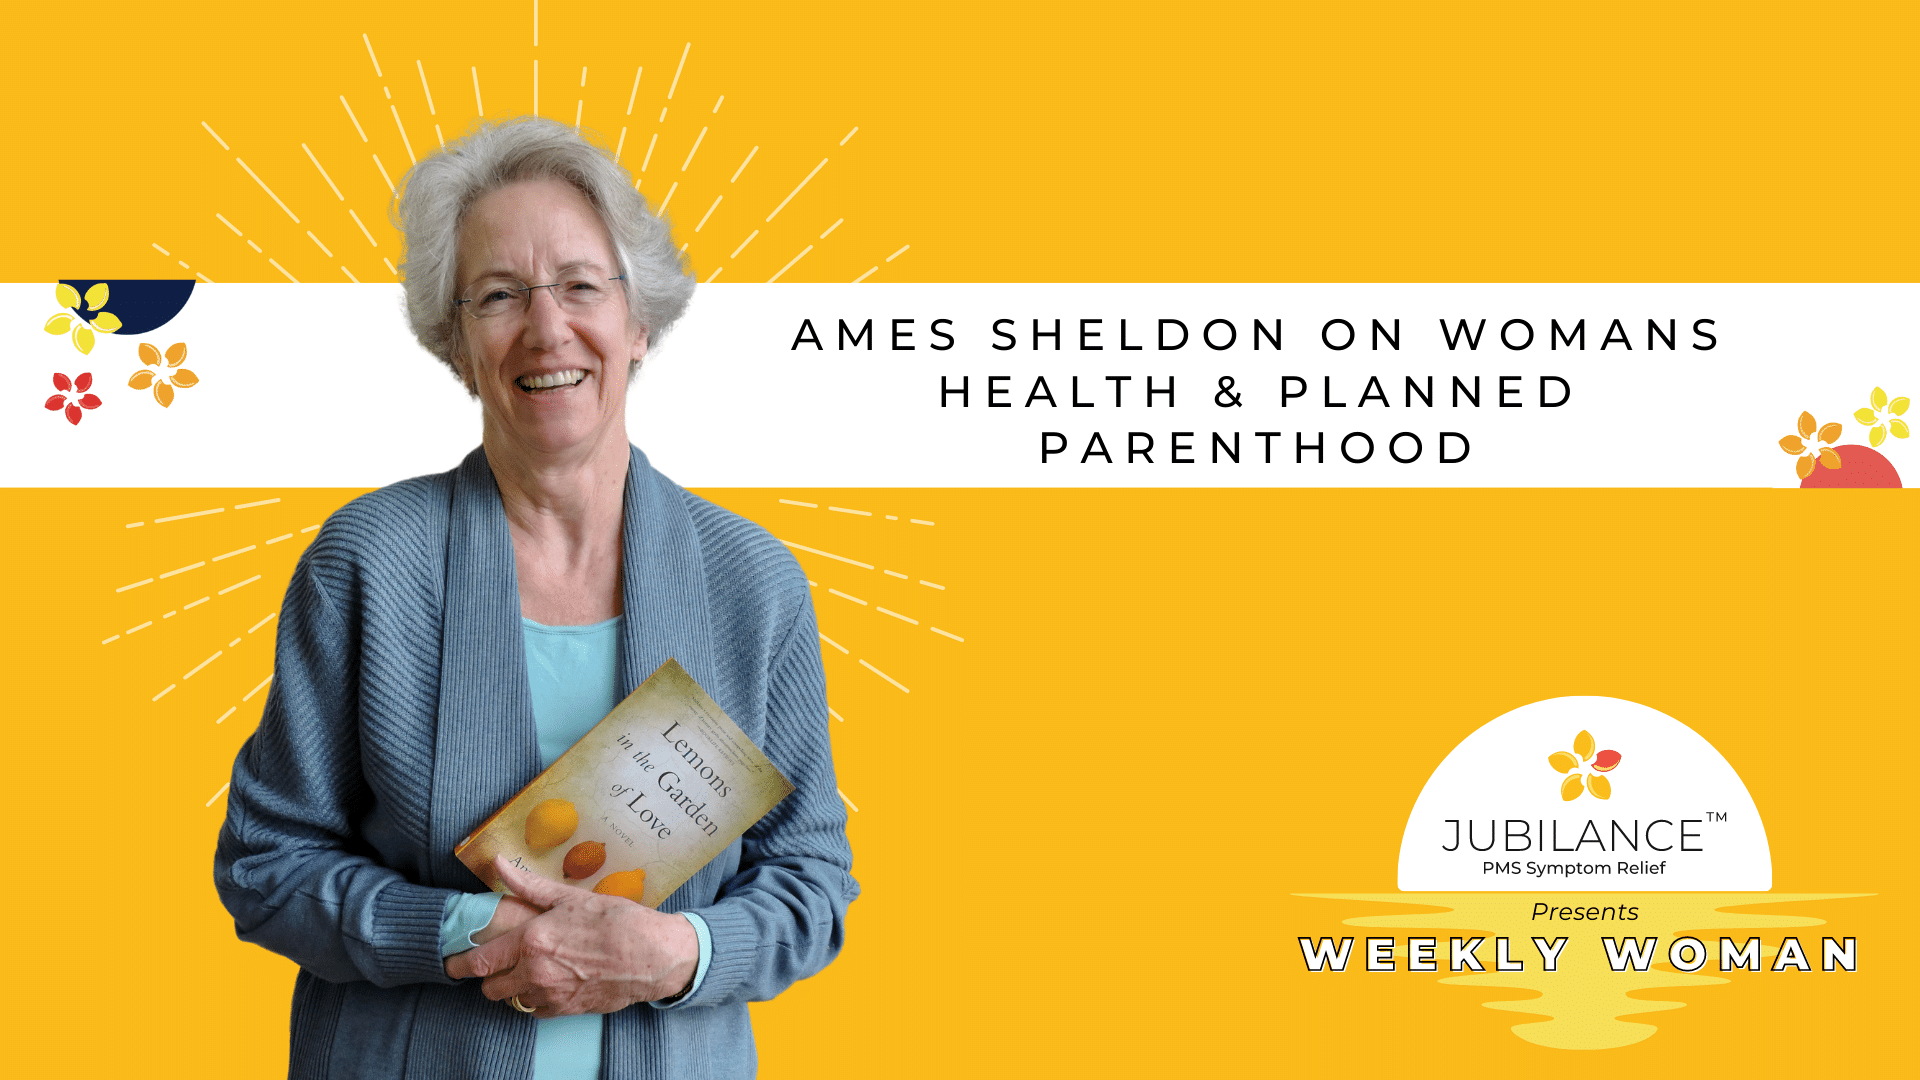 Ames Sheldon holds her new novel